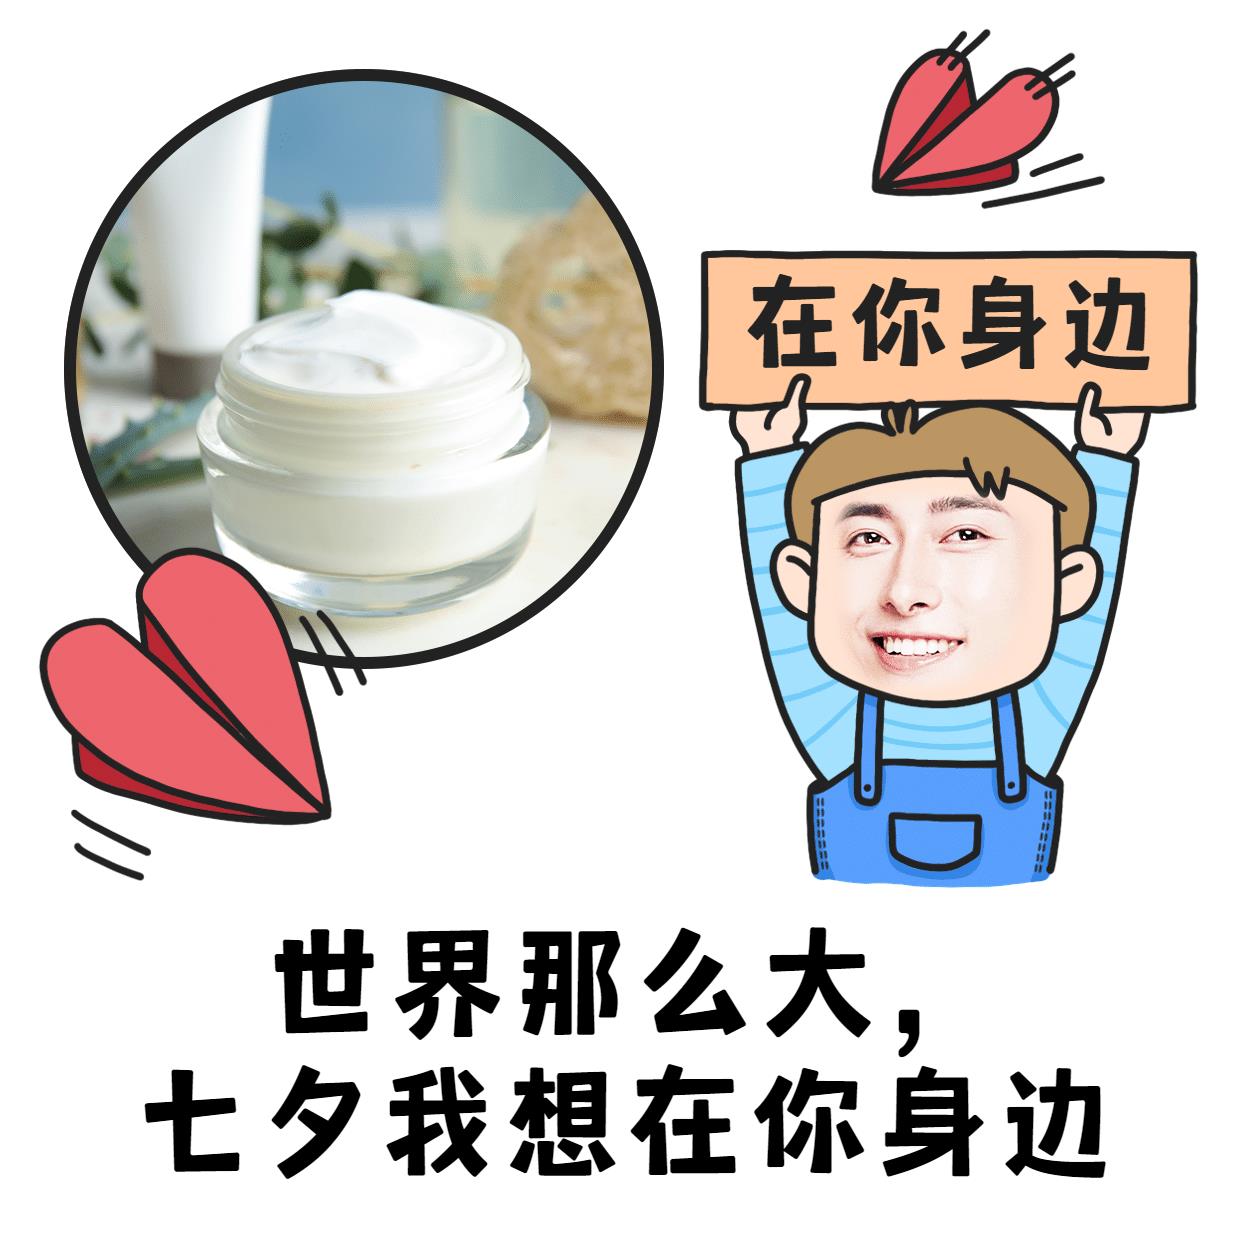 七夕营销表情包趣味晒产品手绘爱心图片